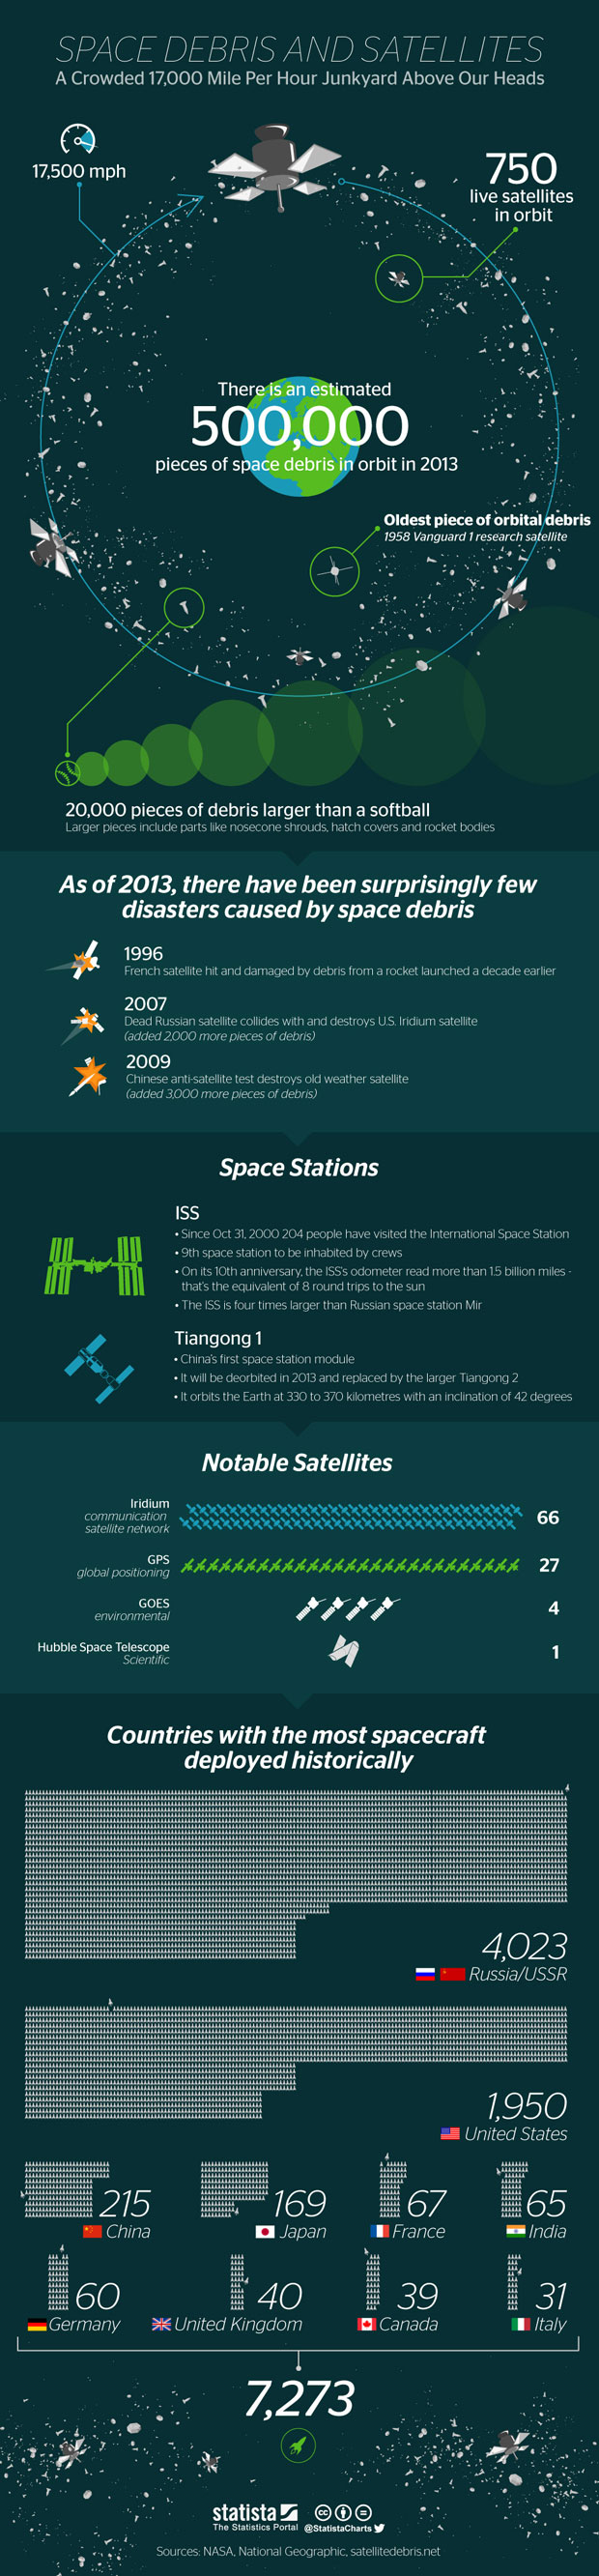 Space debris and Satellites